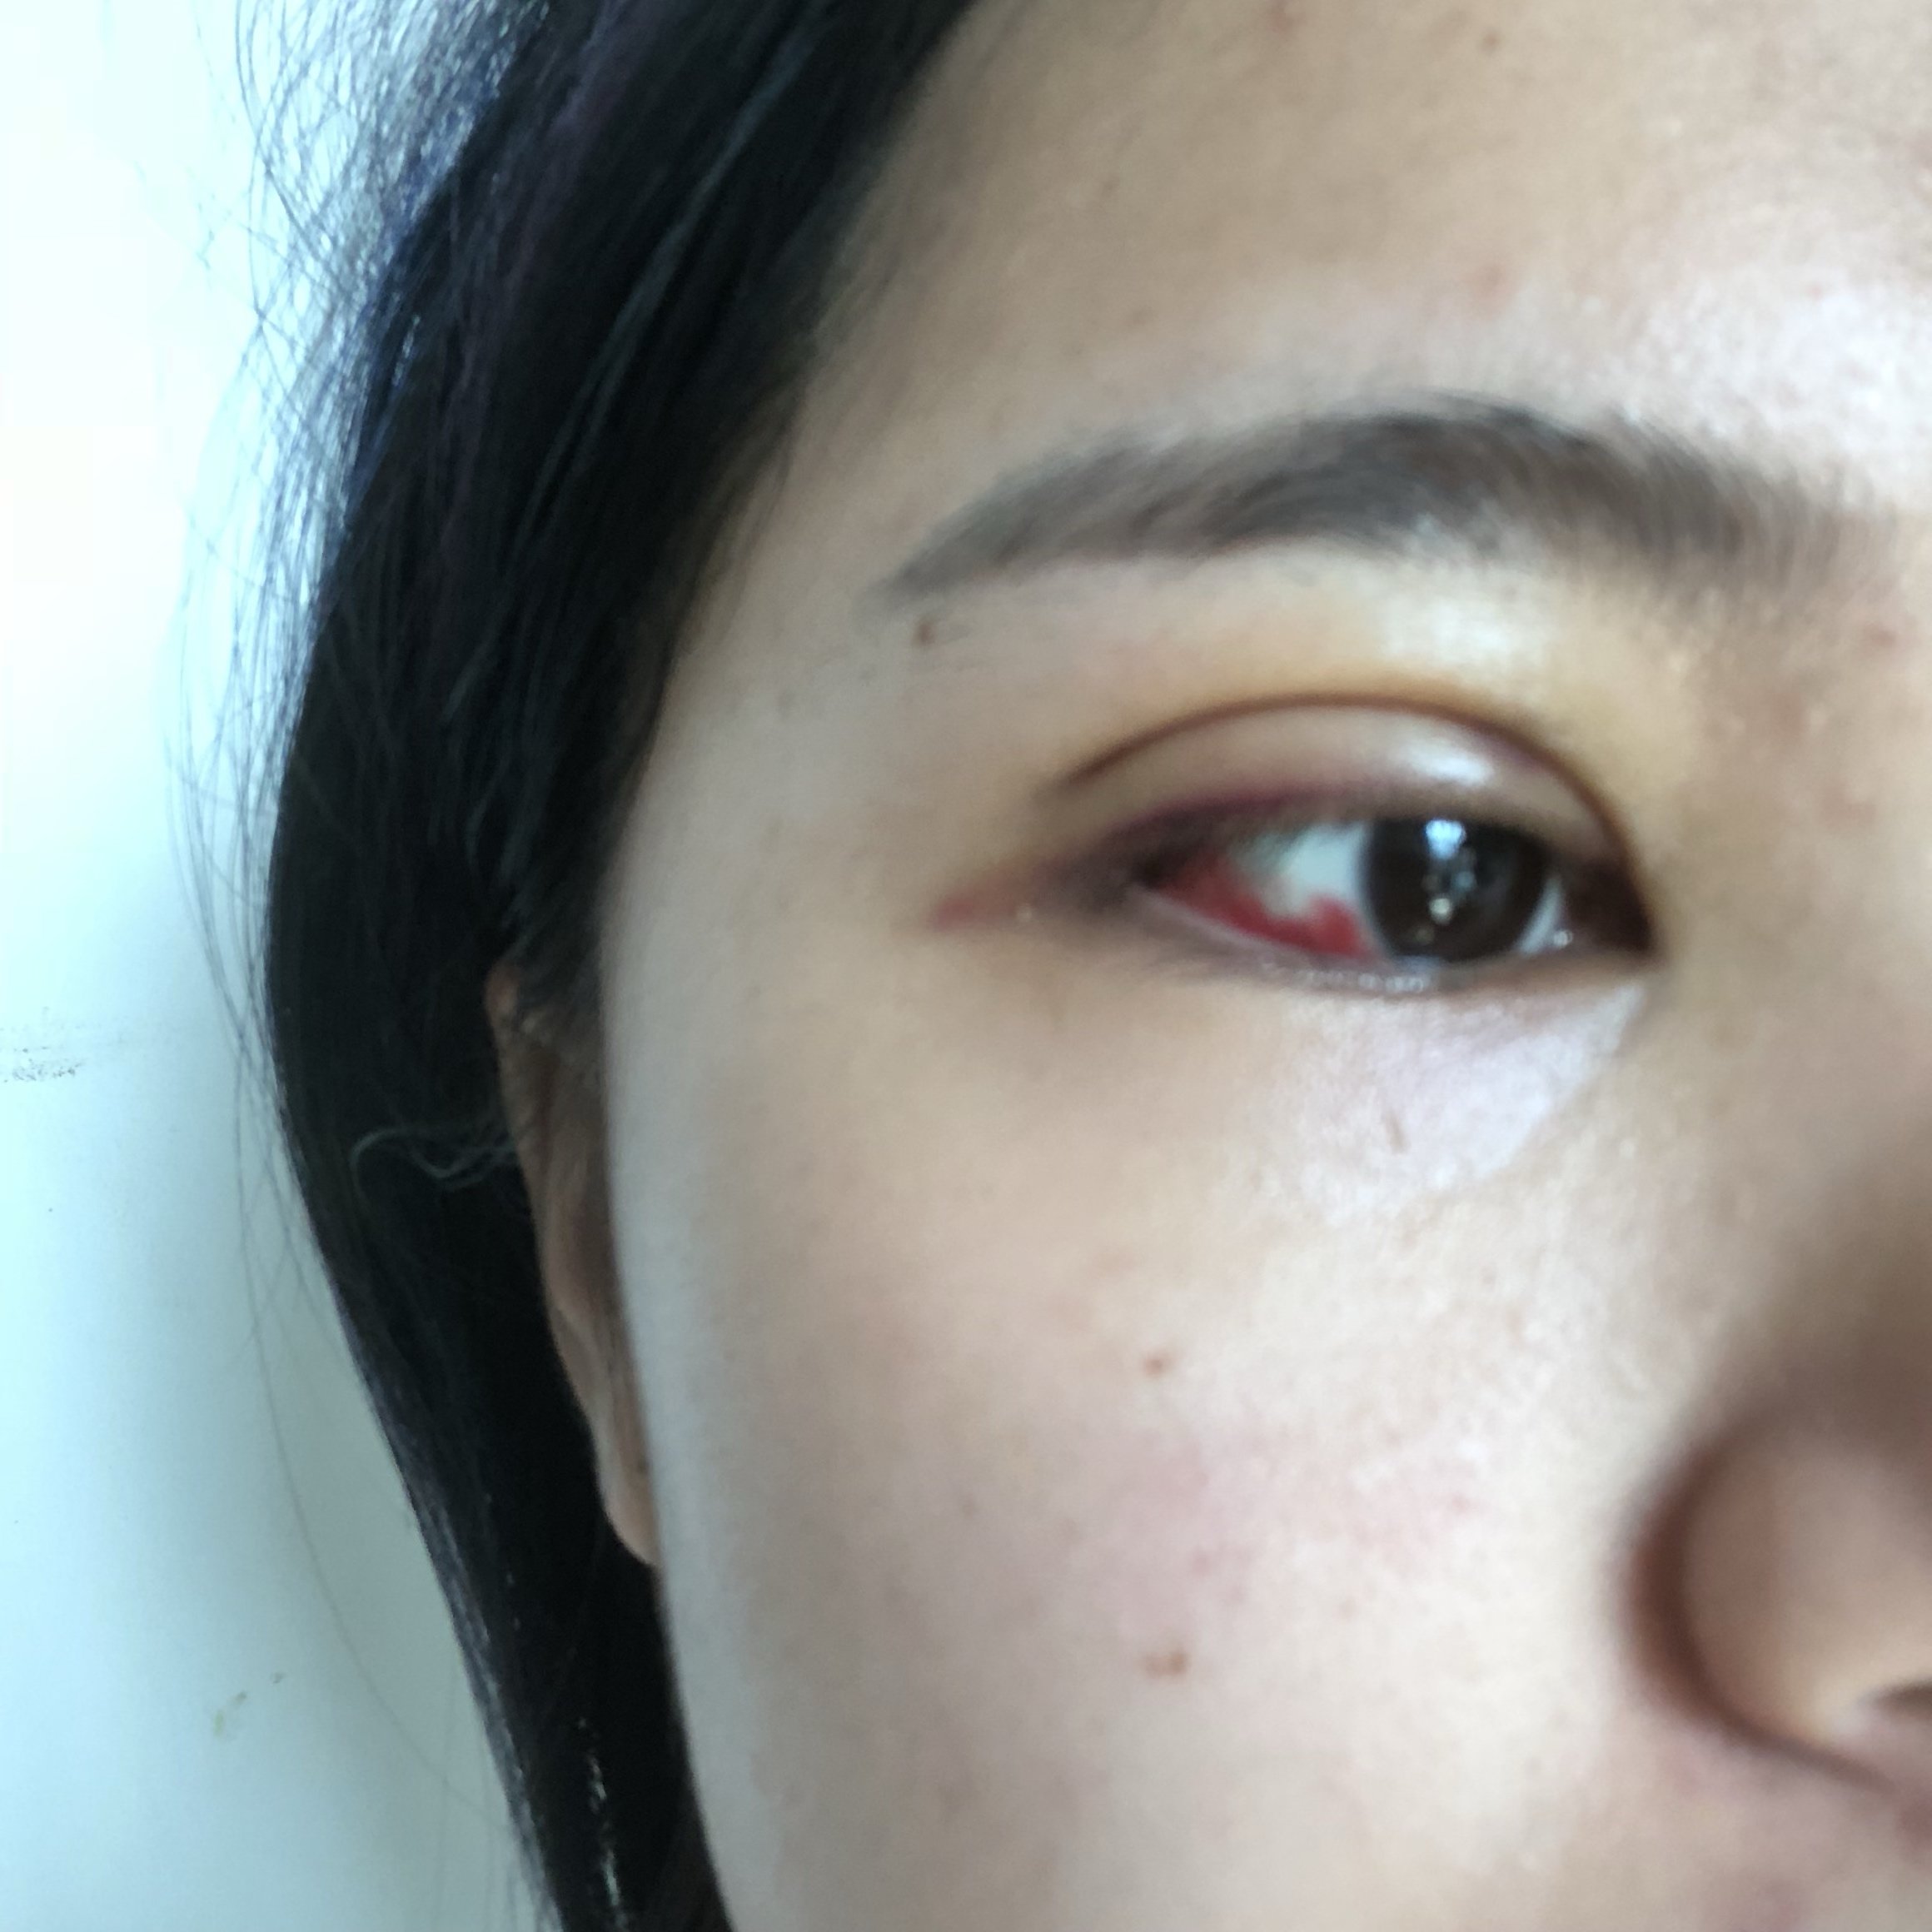 做完双眼皮第三天右眼充血比较严重有什么缓解的方法吗